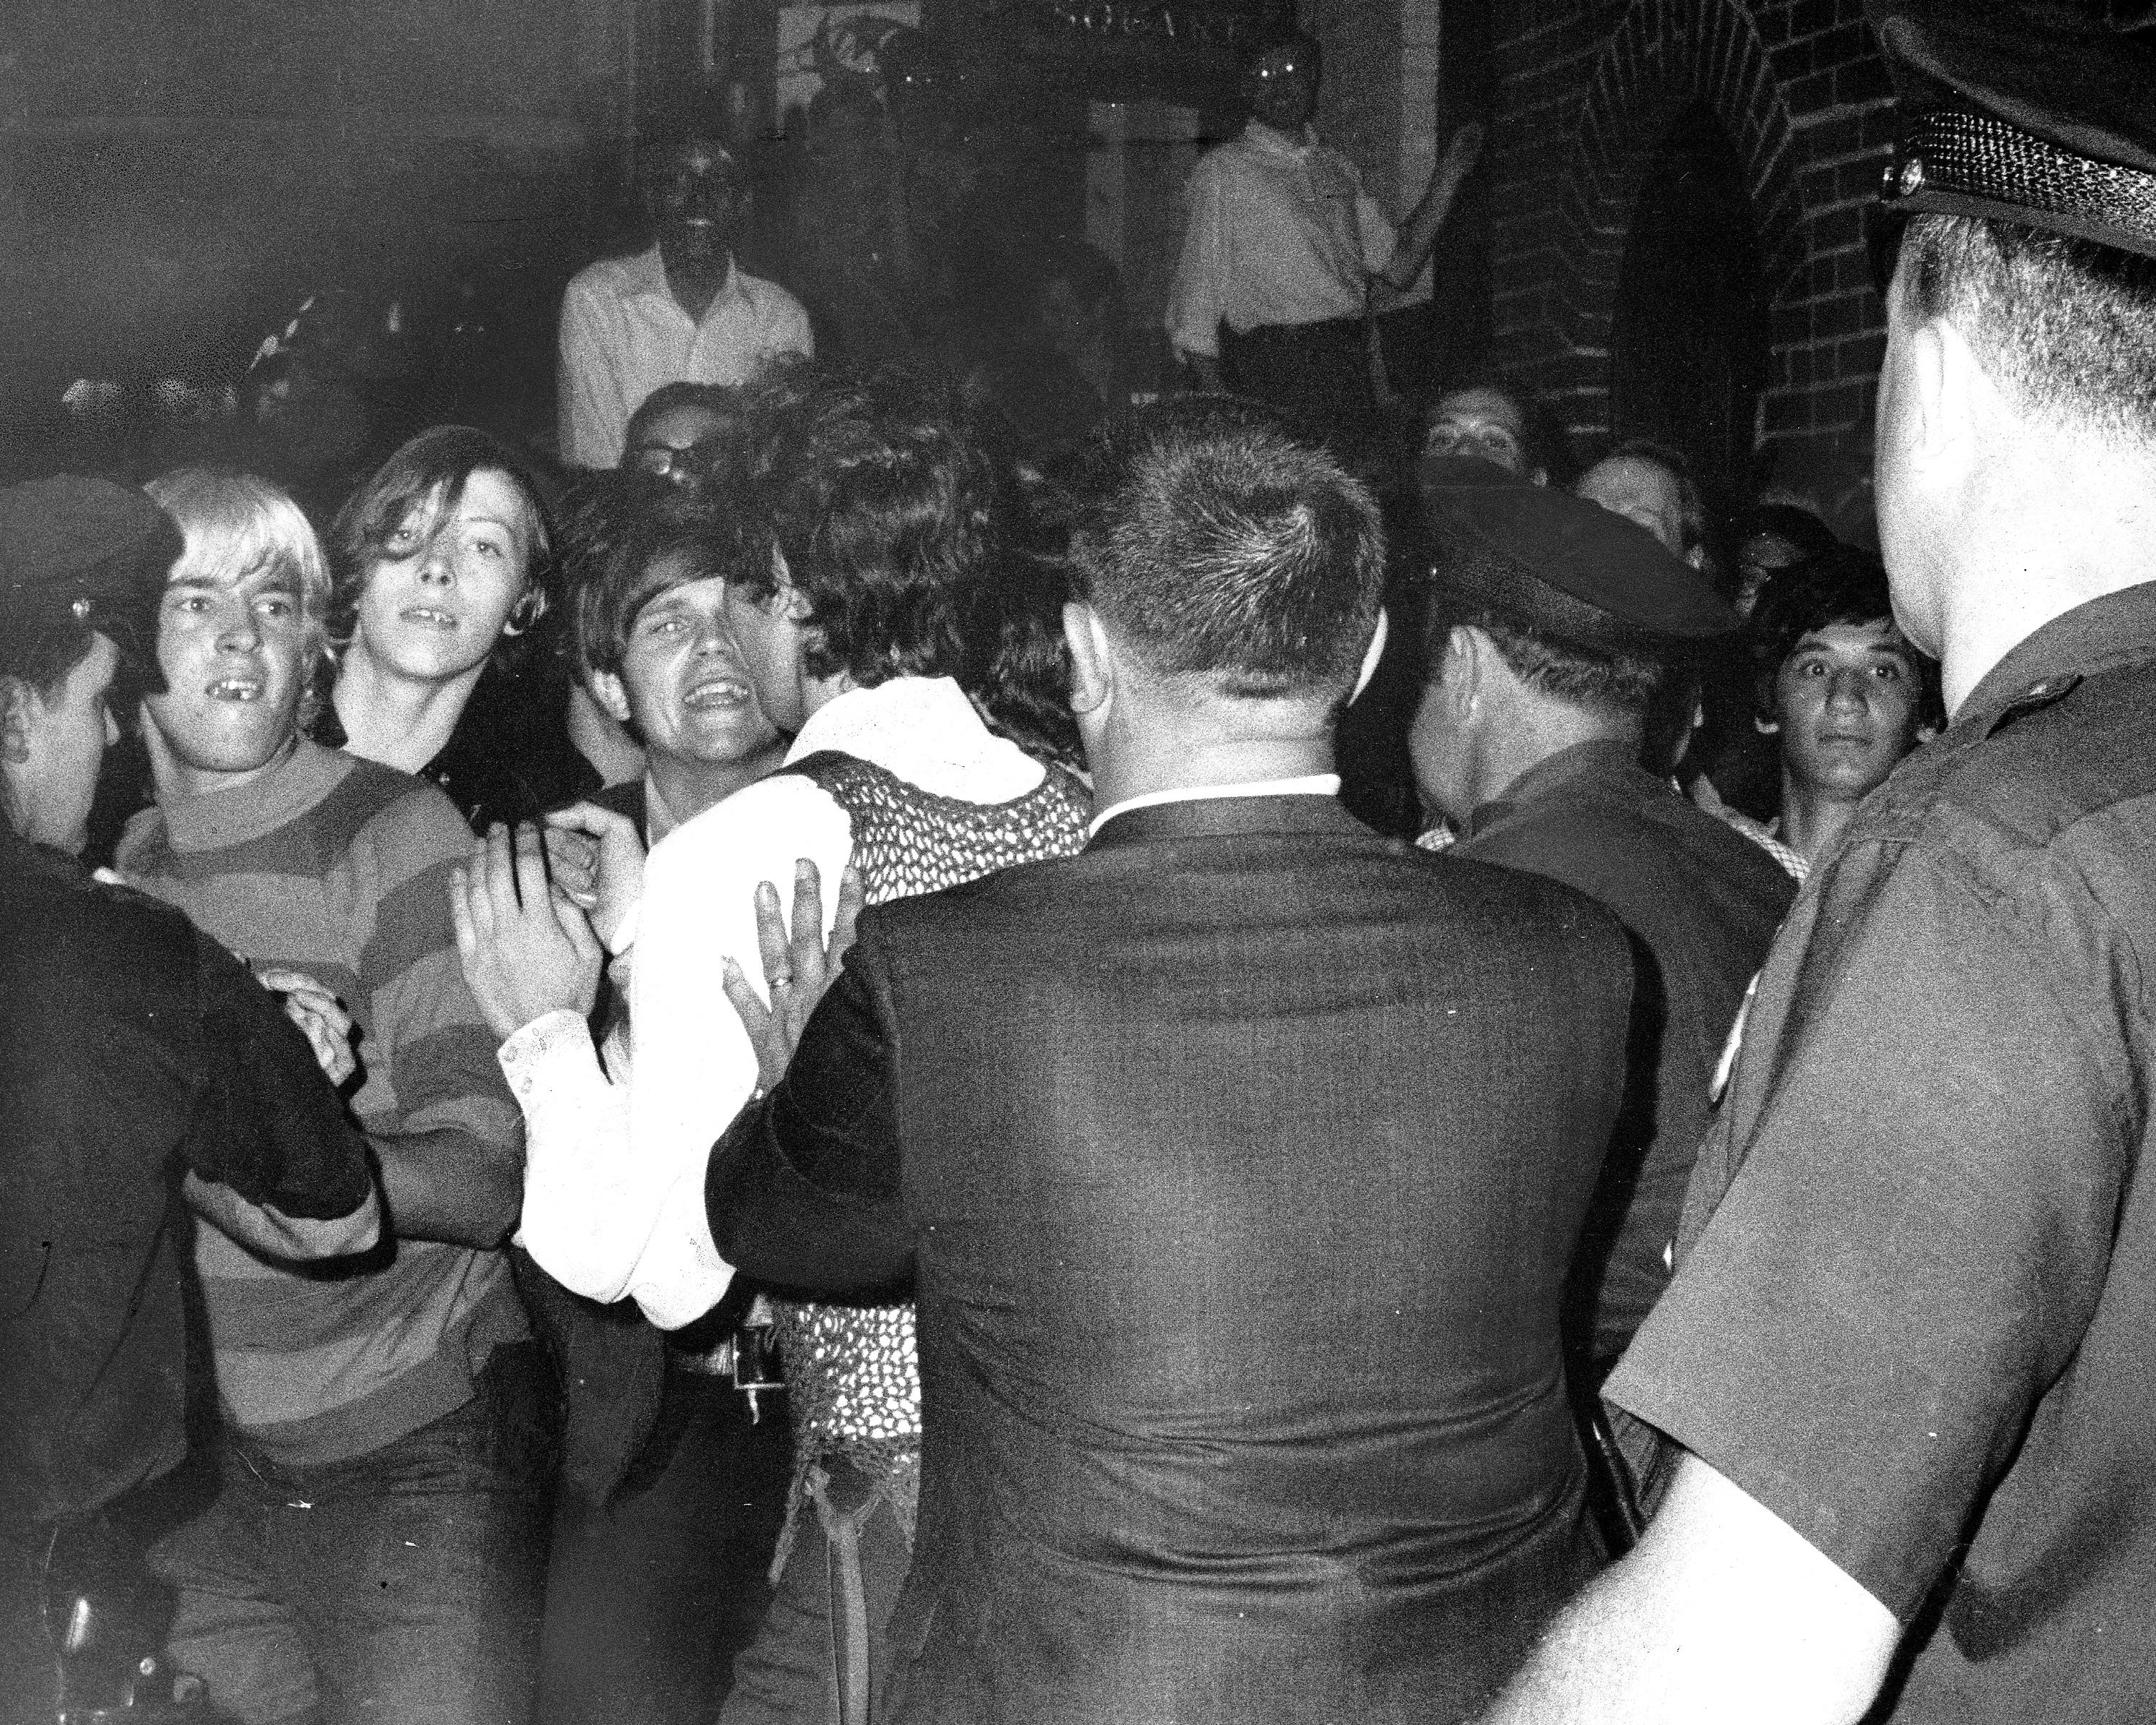 28 juin 1969. Rafle du Stonewall Inn de la Christopher Street. Les gens essayent d’empêcher les arrestations policières. [Getty Images - NY Daily News Archive]